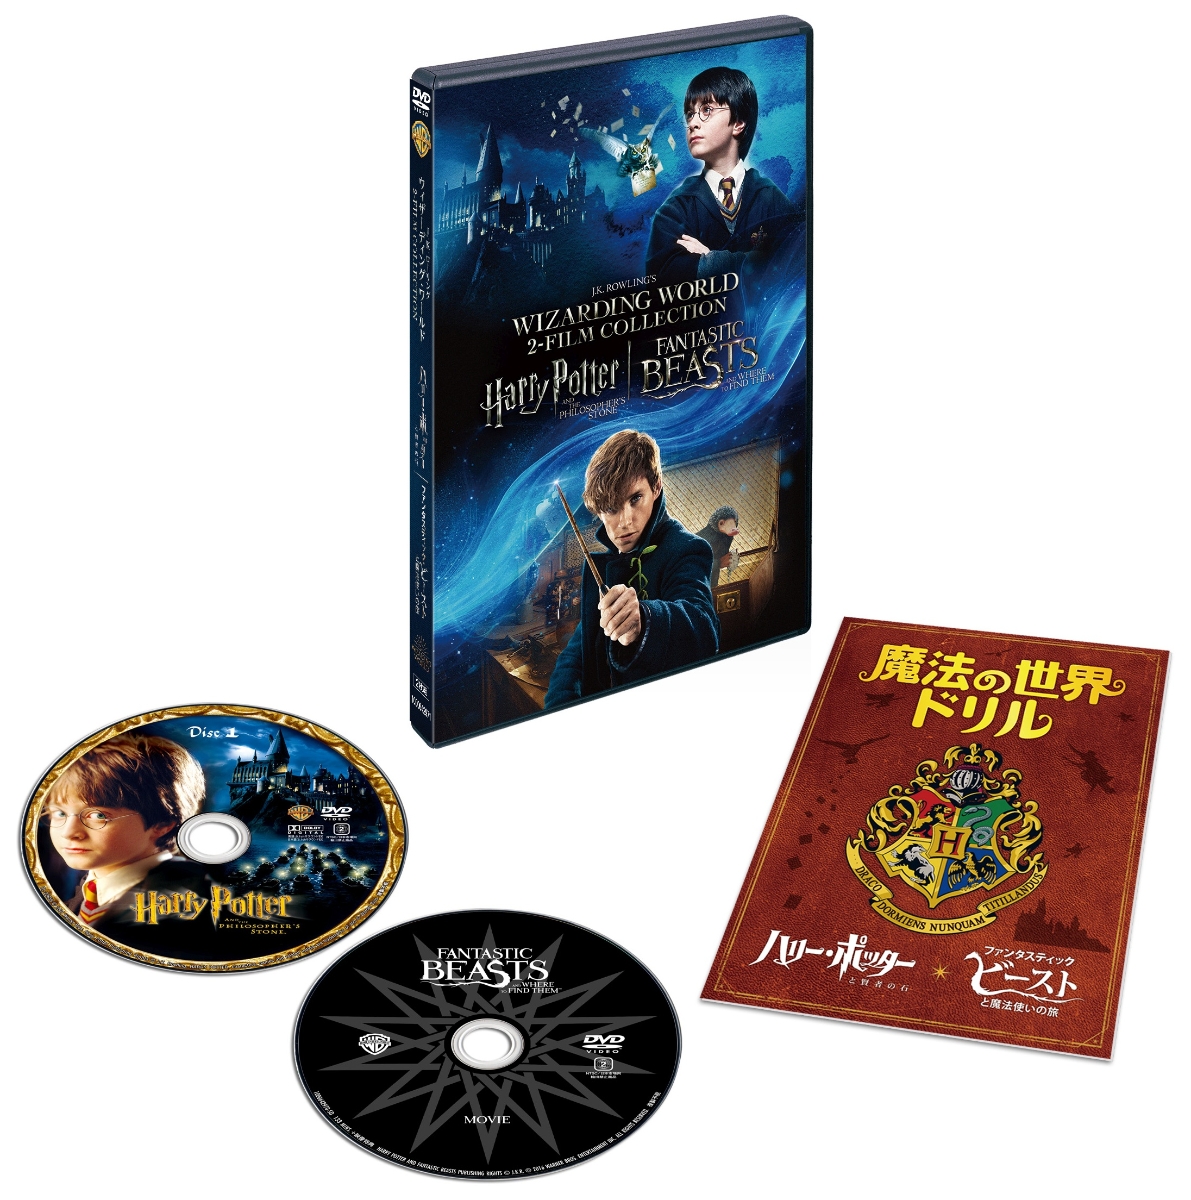 ハリー・ポッターと賢者の石 & ファンタスティック・ビーストと魔法使いの旅 魔法の世界 入学セット画像